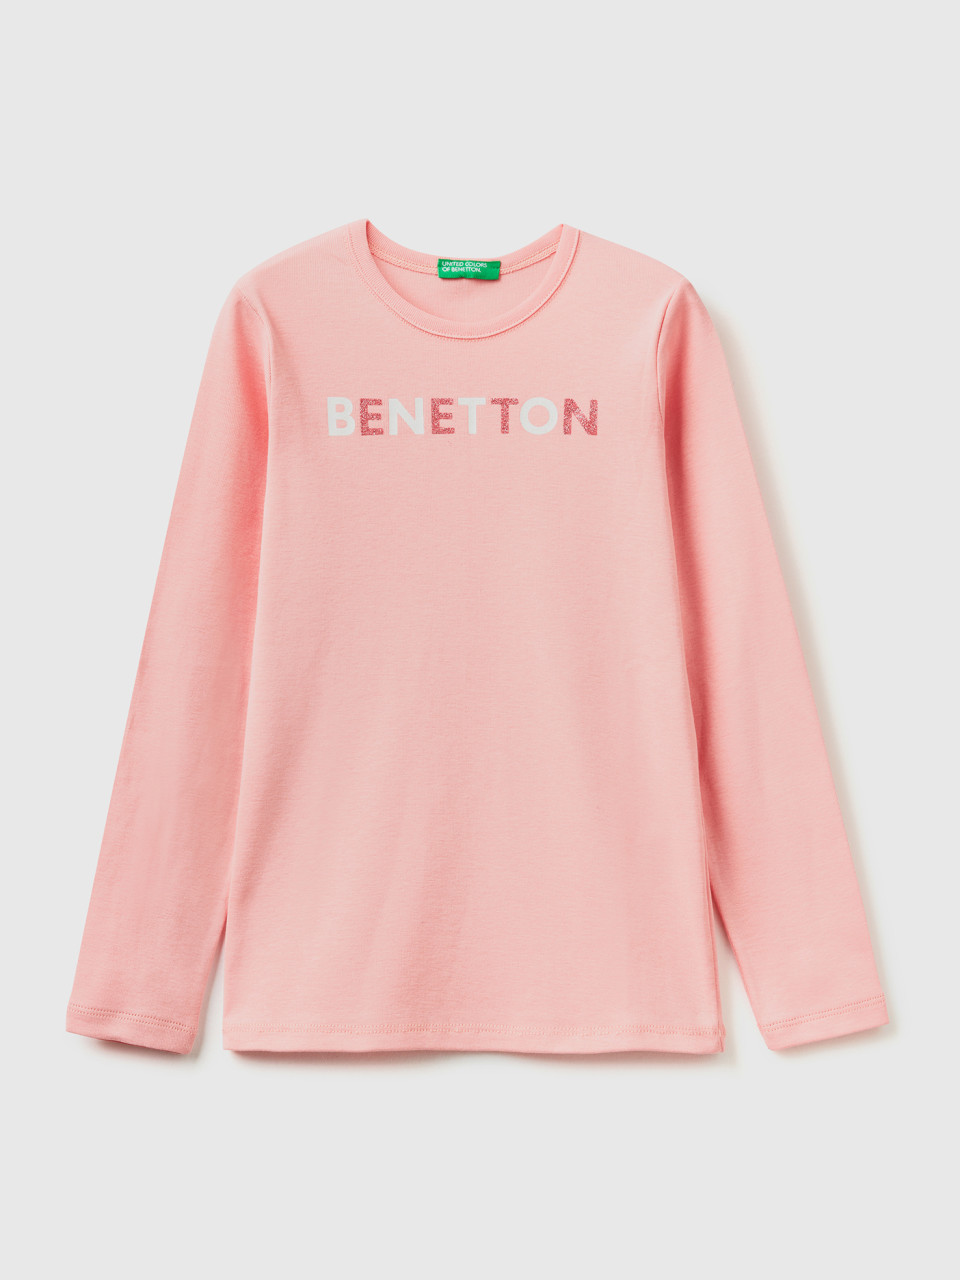 Benetton, T-shirt Mit Langen Ärmeln Und Glitzerprint, Pink, female